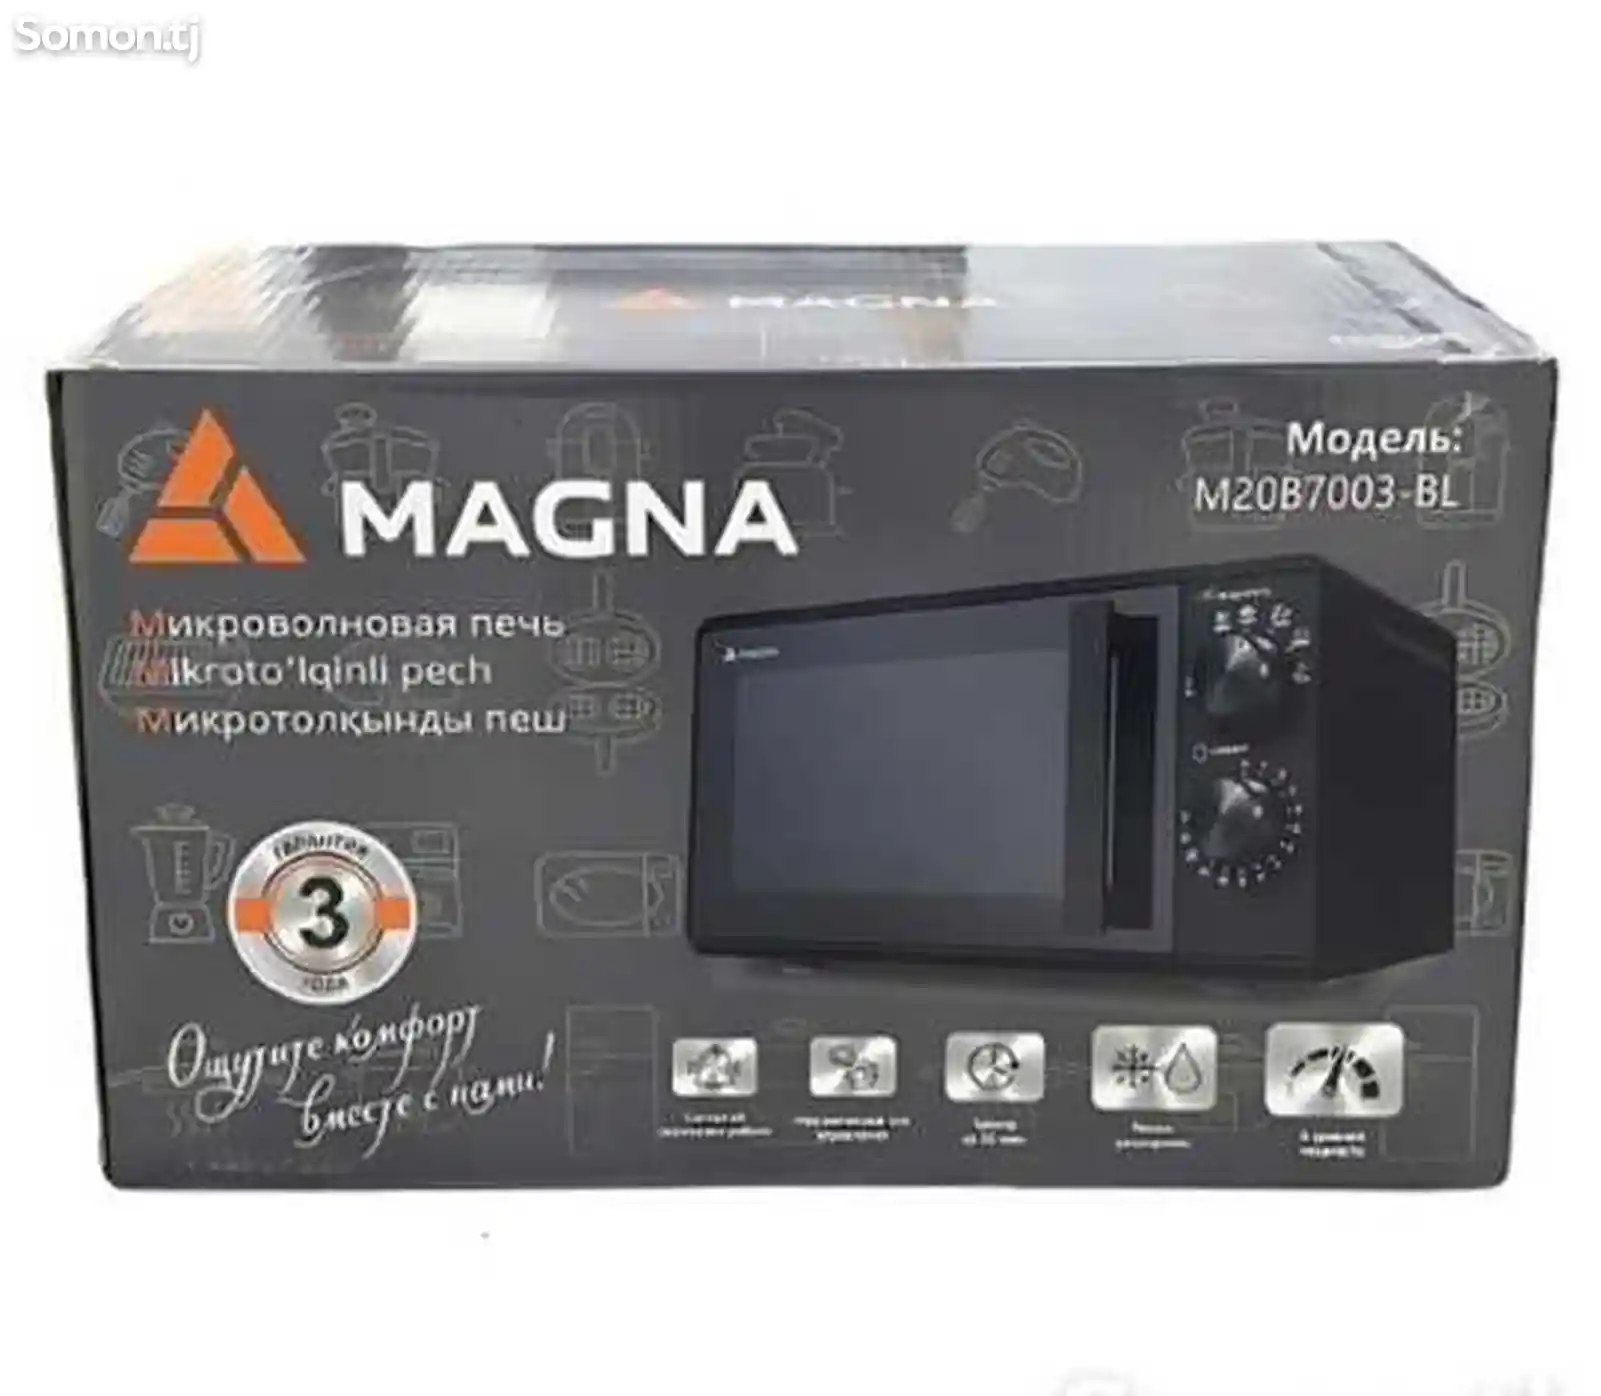 Микроволновая печь Magna-7006-2